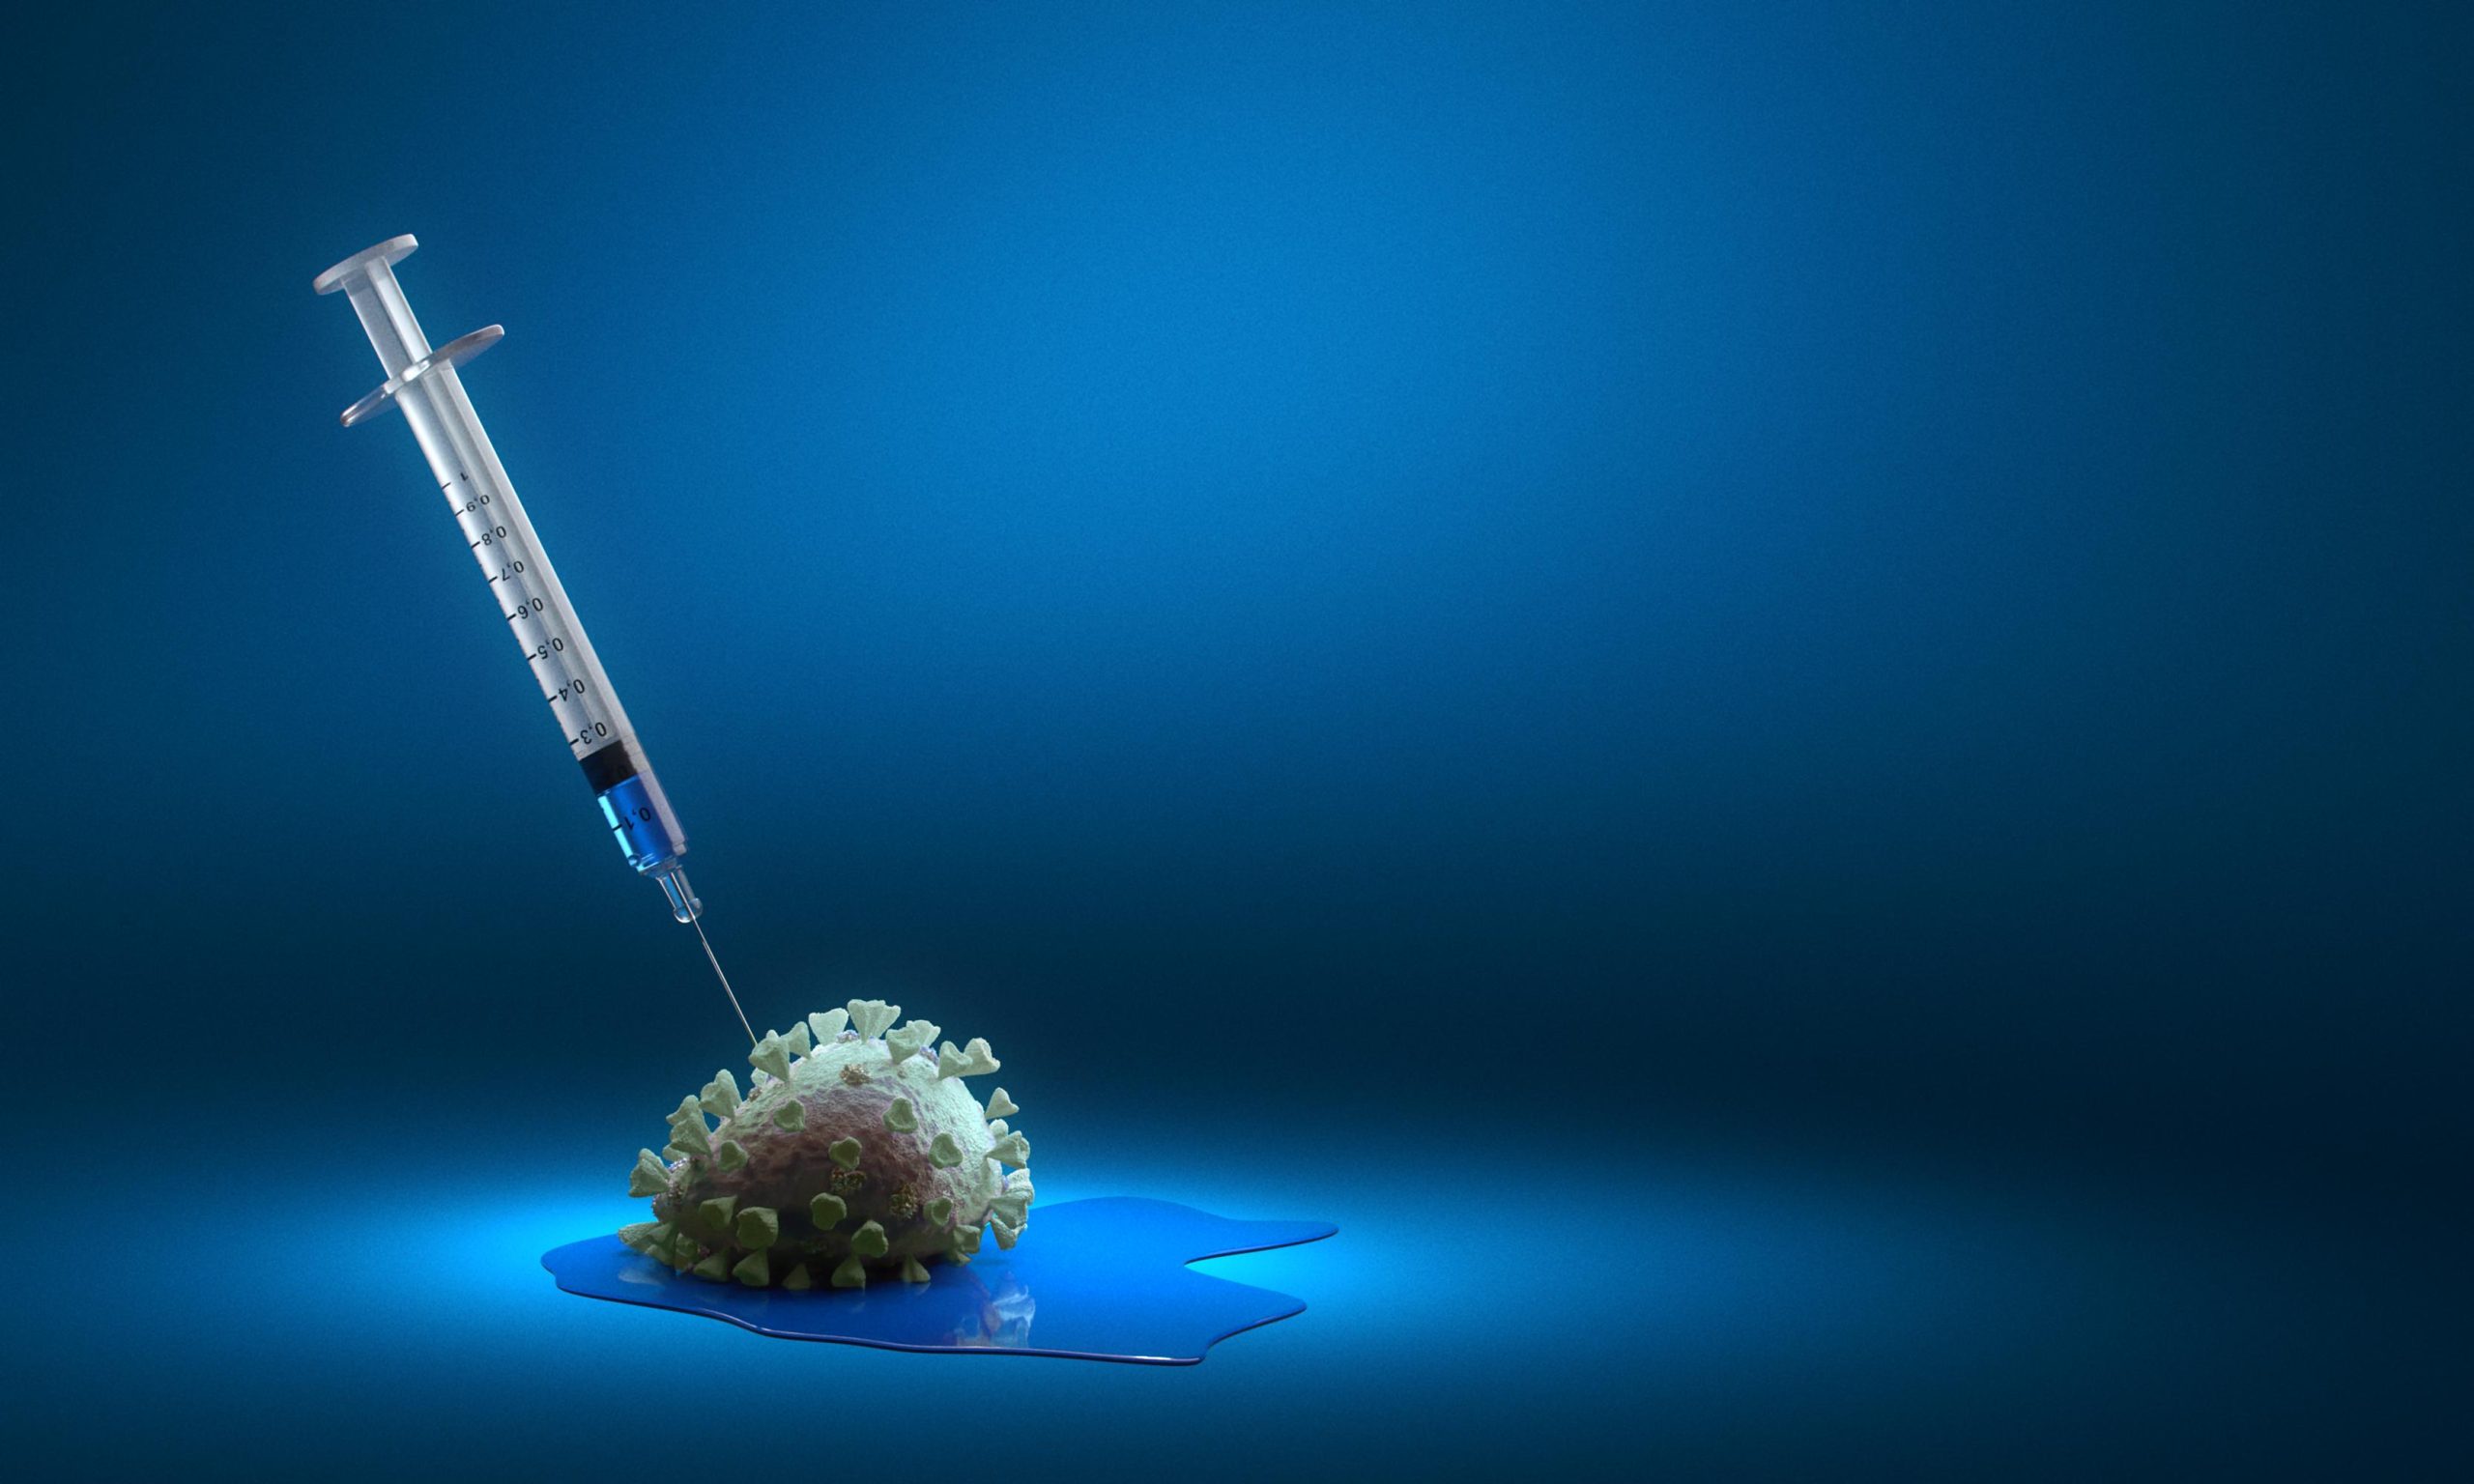 Ο ΕΜΑ εγκρίνει τα εμβόλια των Pfizer και Moderna κατά της Όμικρον